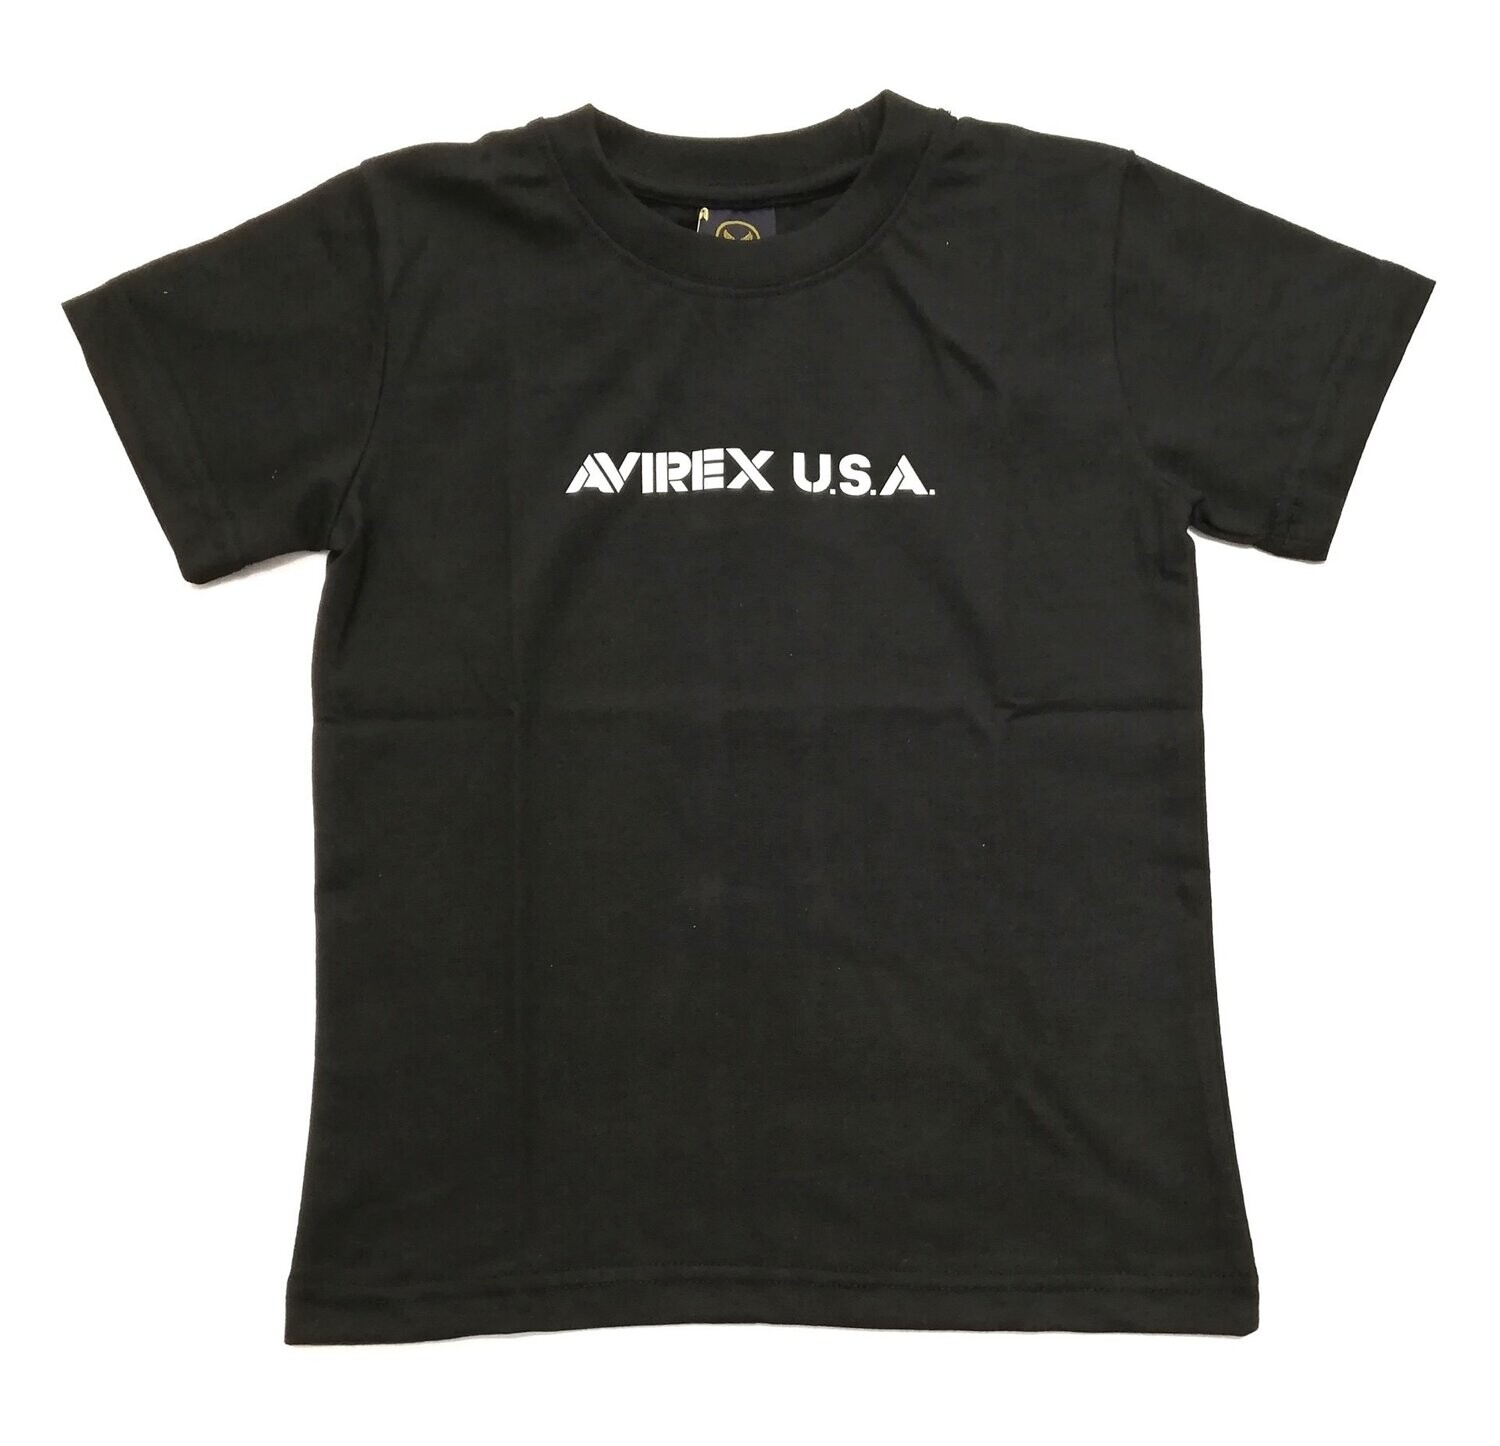 Avirex - T-shirt nera logo bianco, Size: 6 anni